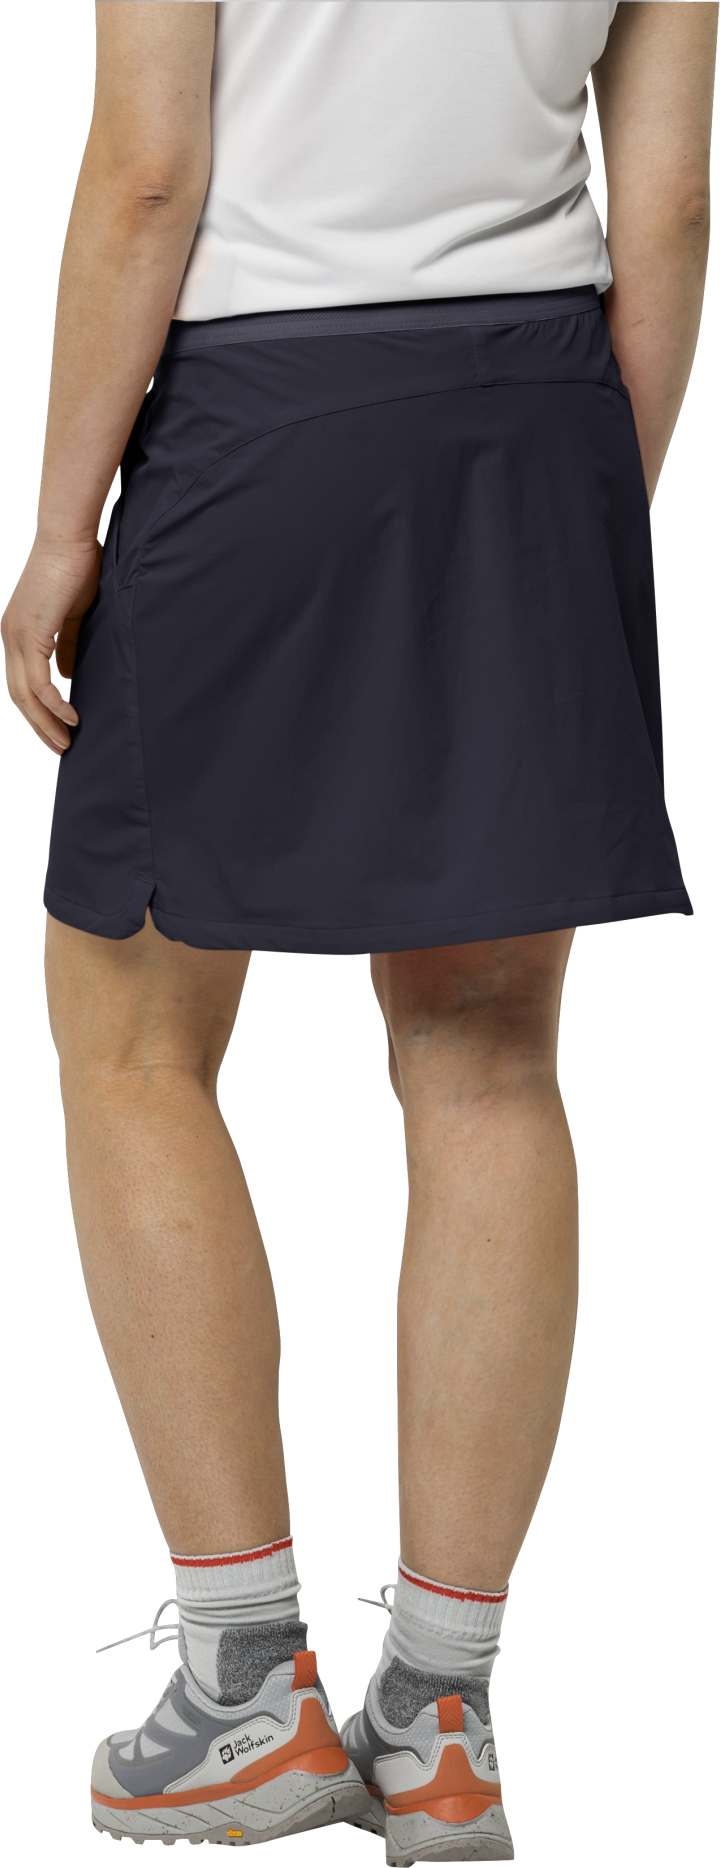 Dámská softshellová sukně